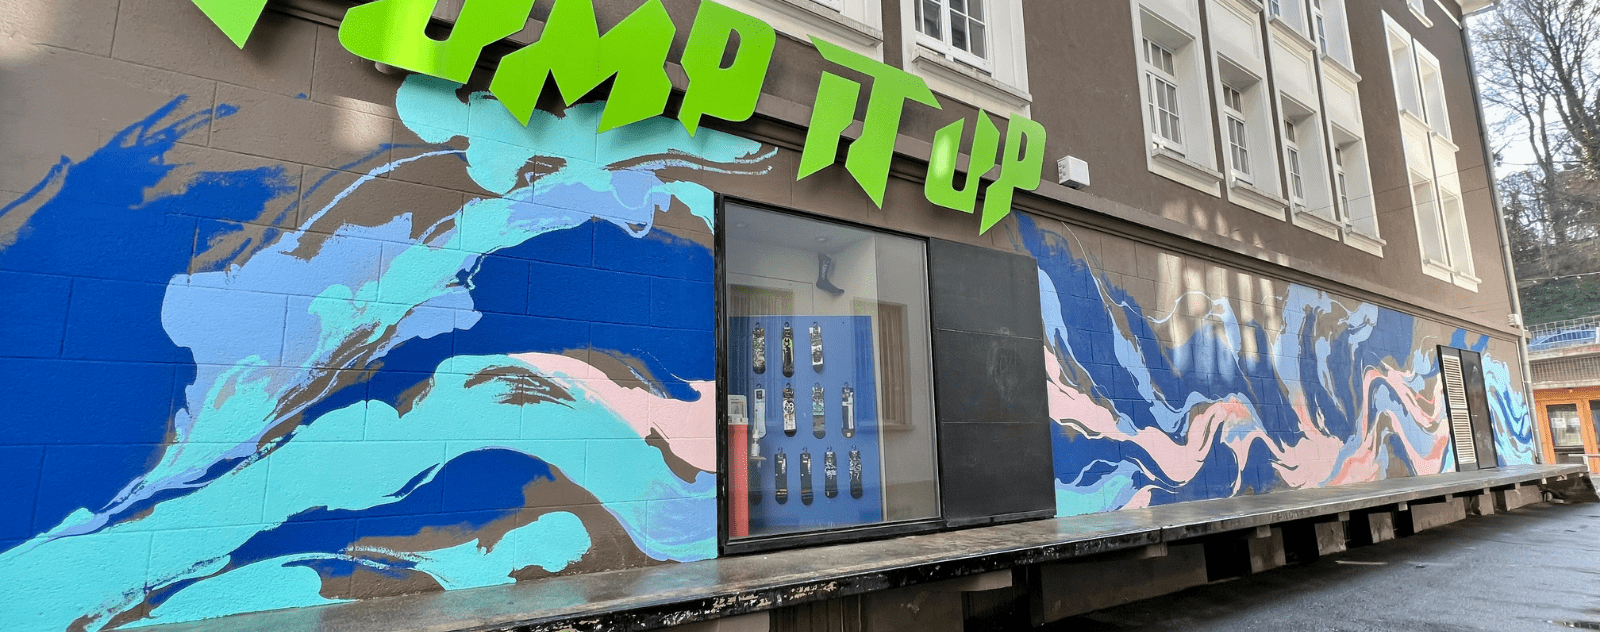 Le mur peint du magasin Pomp It Up